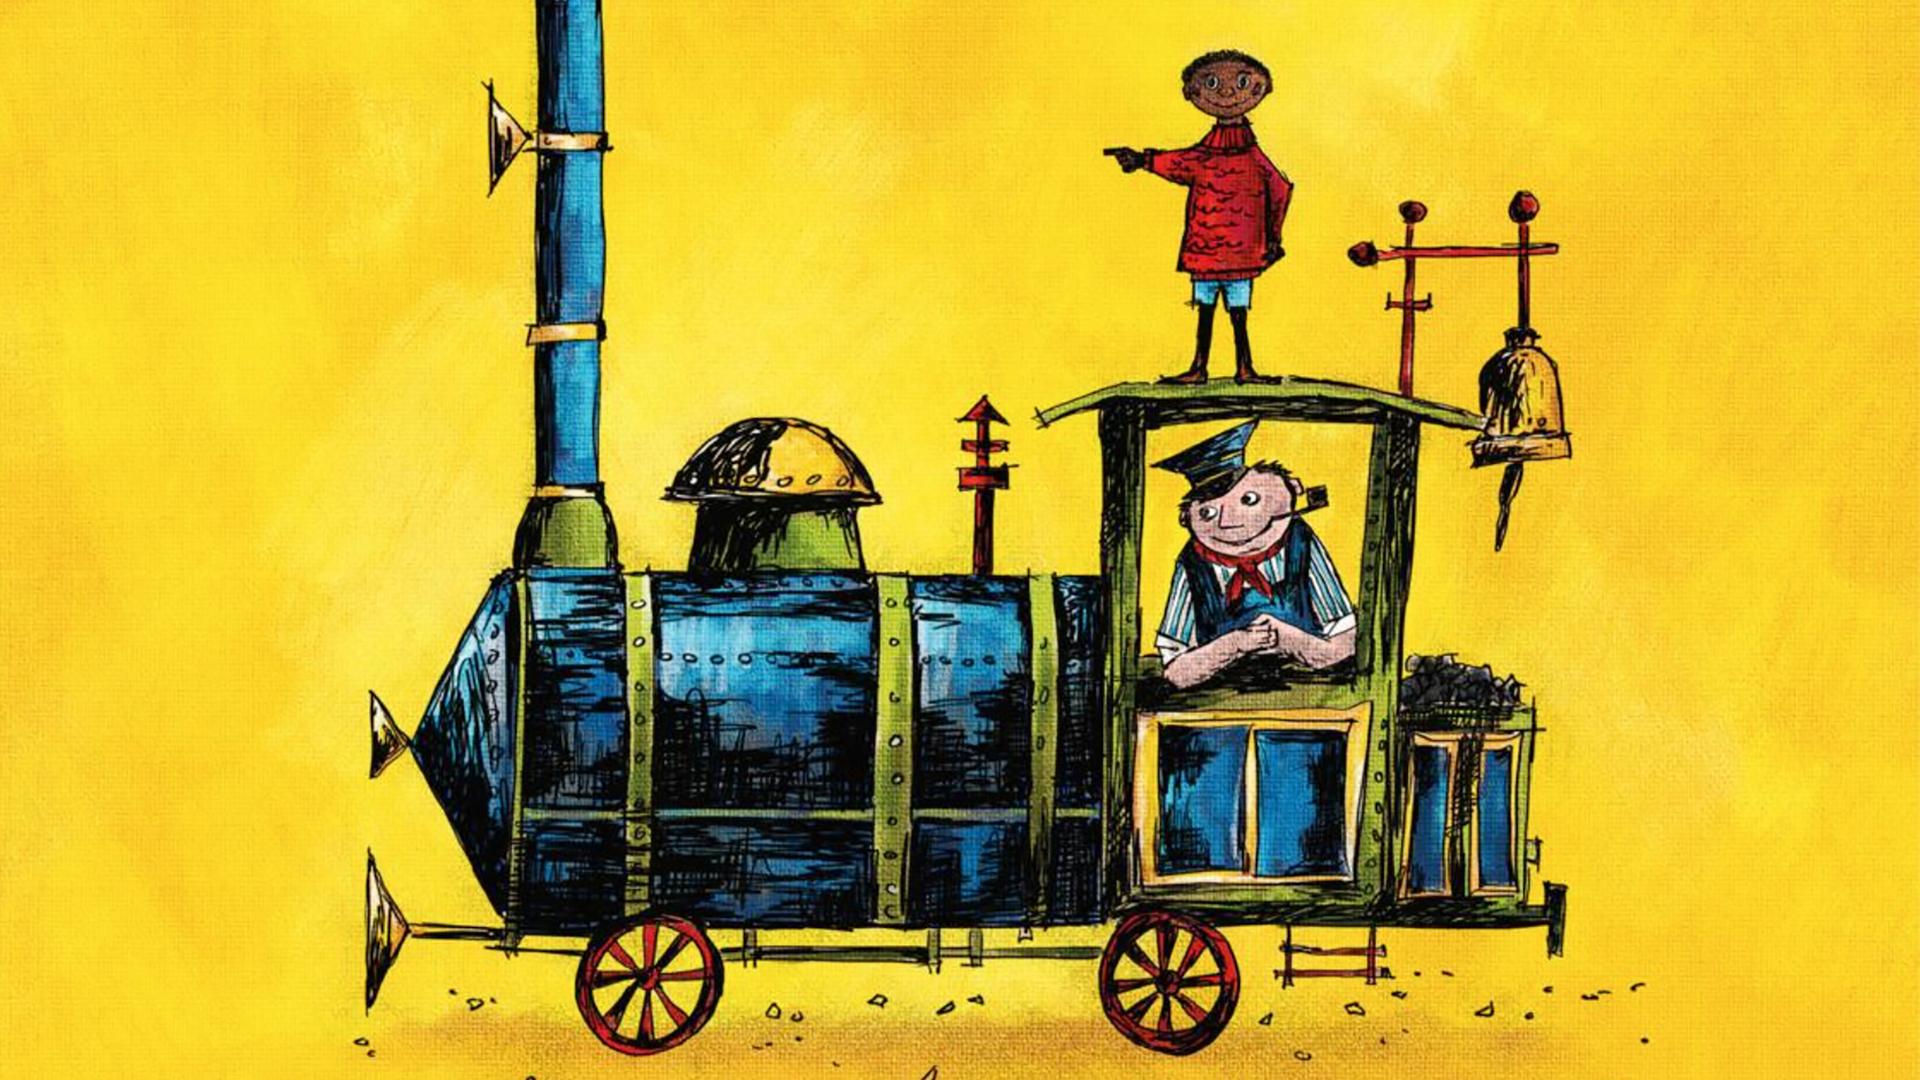 Illustration auf der Rückseite der Neuausgabe des Kinderbuchs "Jim Knopf und Lukas der Lokomotivführer" von Michael Ende 